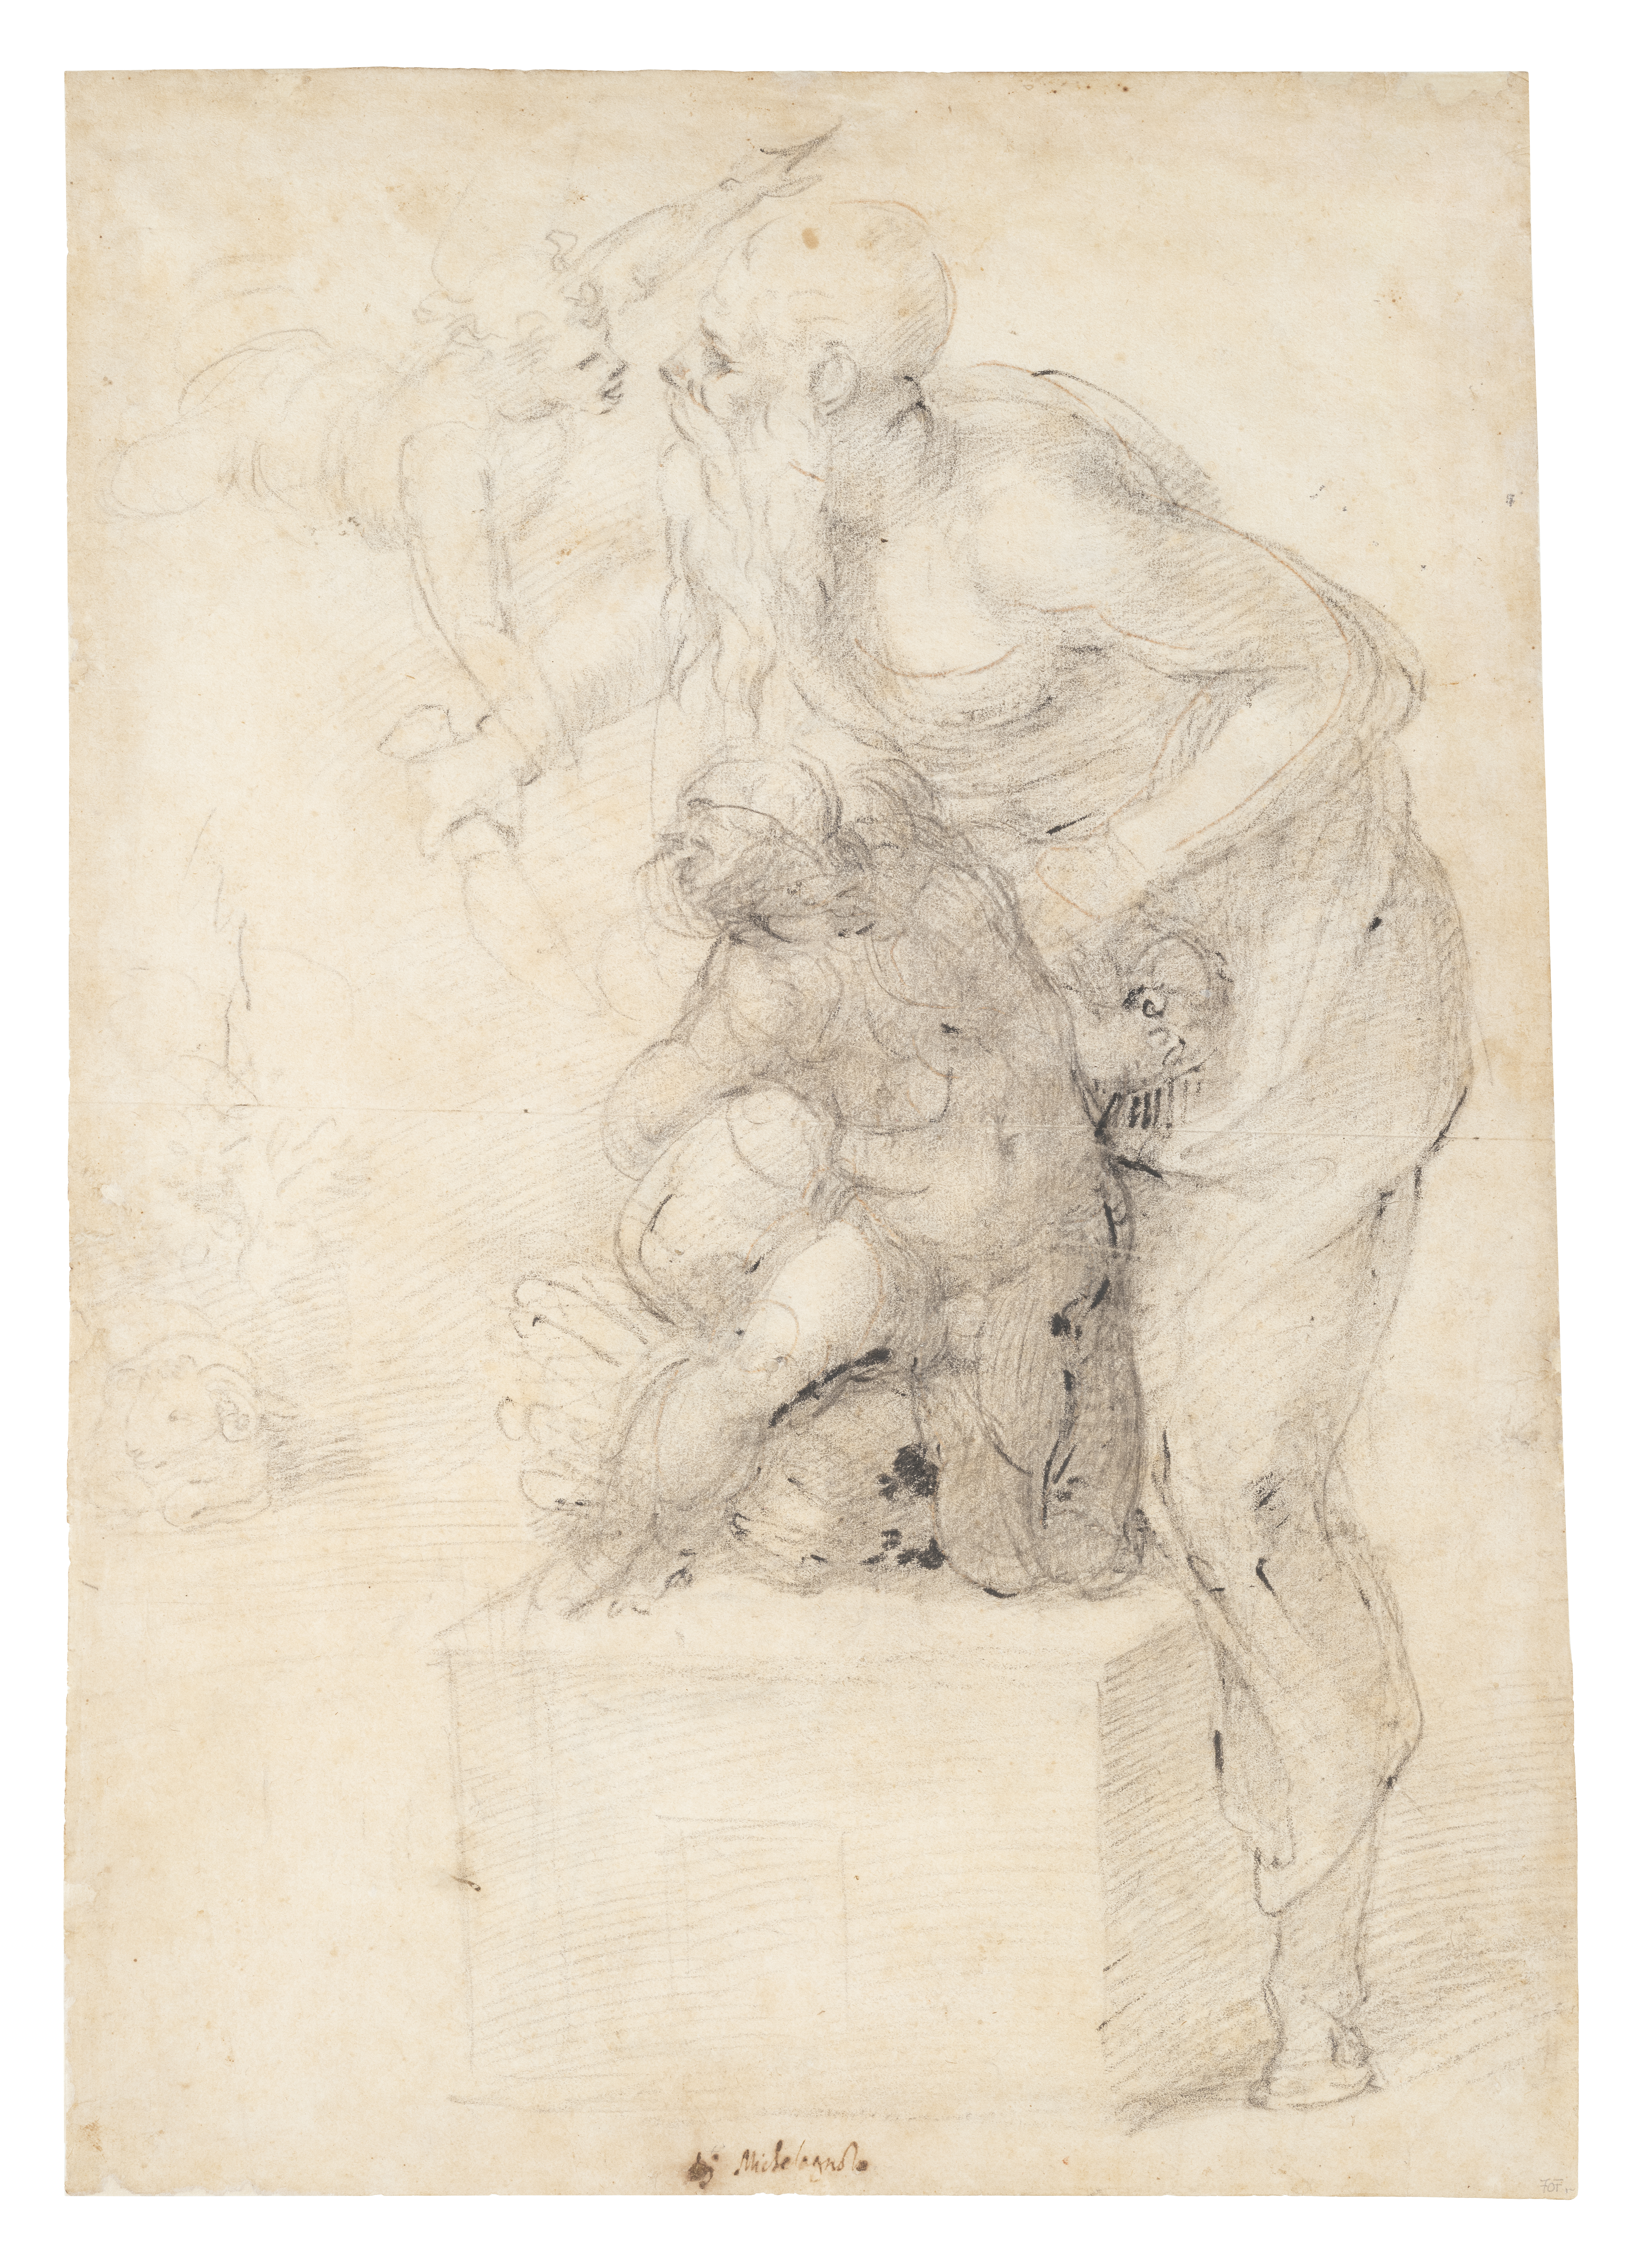 Disegno di Michelangelo: Abramo sacrifica Isacco sull'altare ma viene fermato dall'angelo